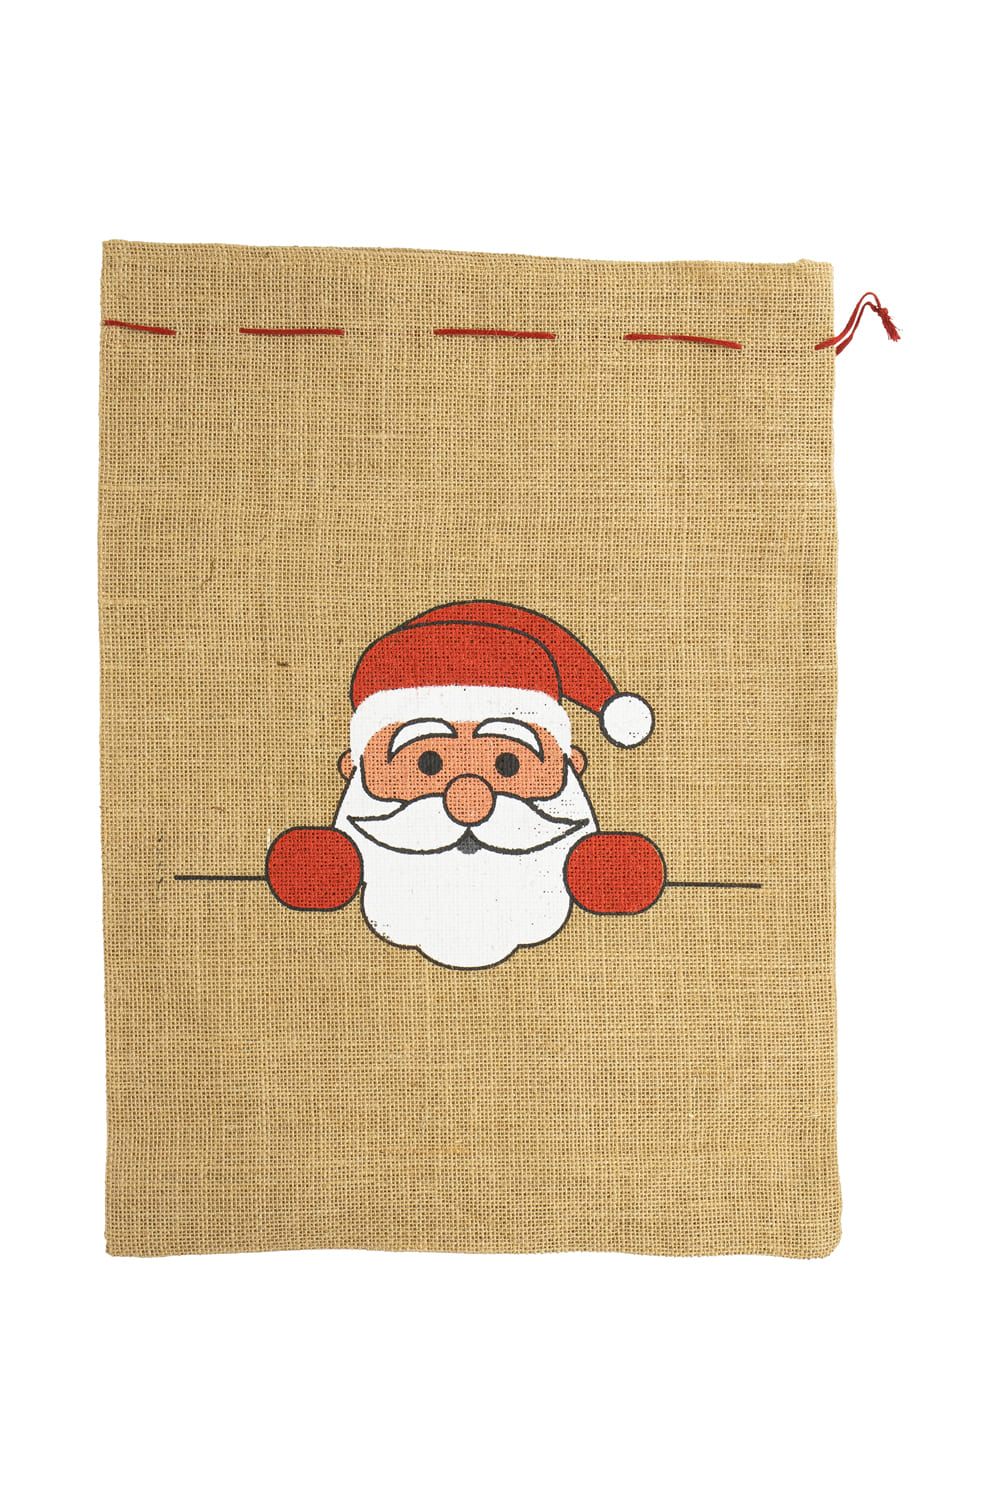 Der Chlaussack ist aus Jute und ist ca. 36 x 48 cm gross. Auf dem Jutesack ist ein Samichlaus aufgedruckt. Eine originelle und beliebte Geschenkverpackung fuer den Samichlaus Tag und die Weihnachtszeit. Einfach mit Leckereien und kleinen Geschenken befuellen! 